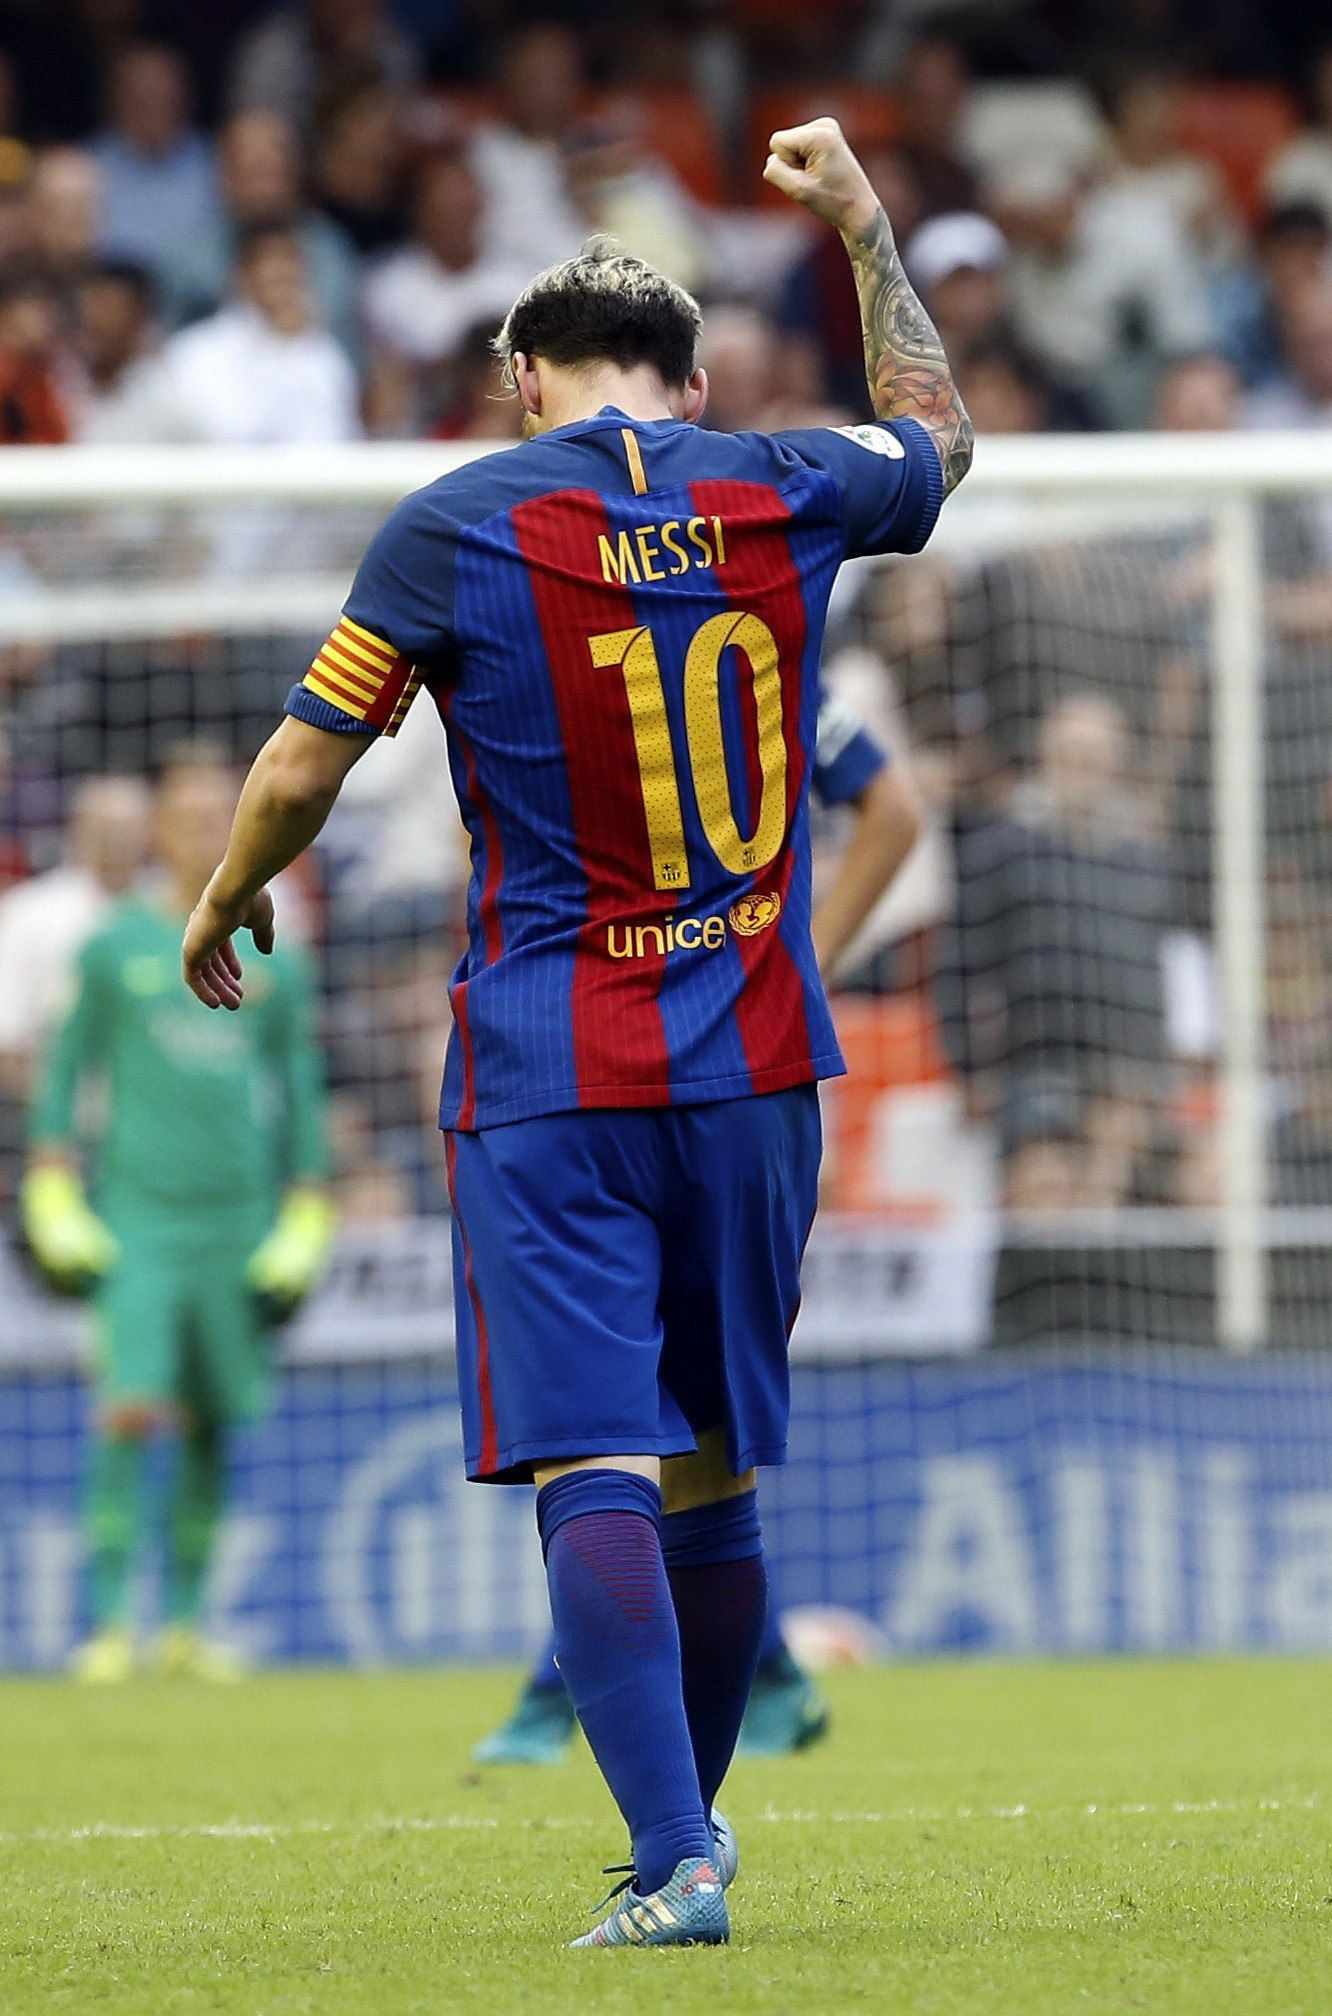 Nuevo récord del Messi más letal